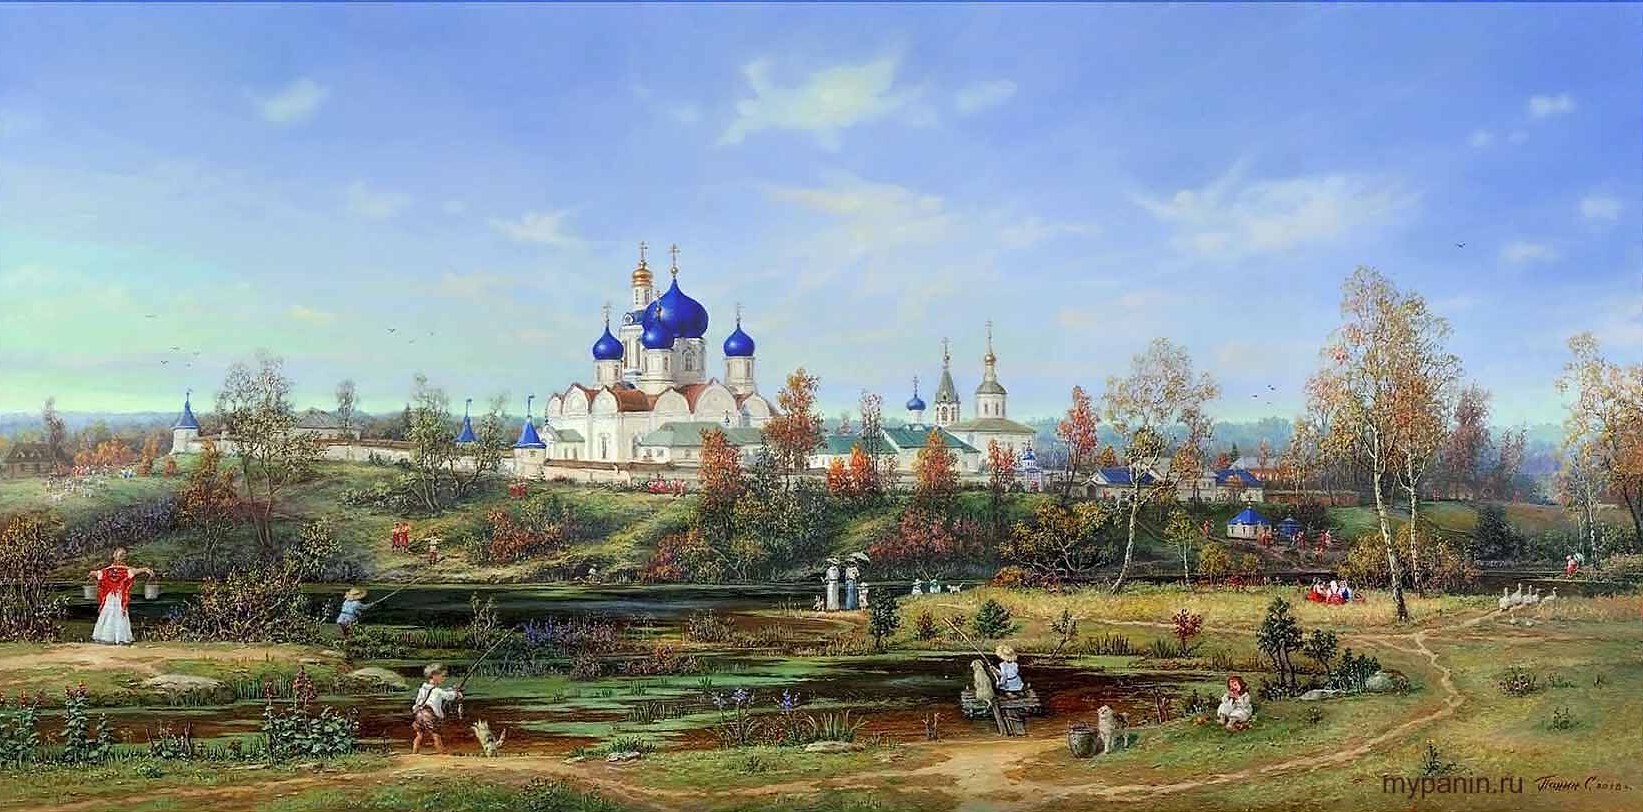 bogolyubskij-monastyr'-frame (1)